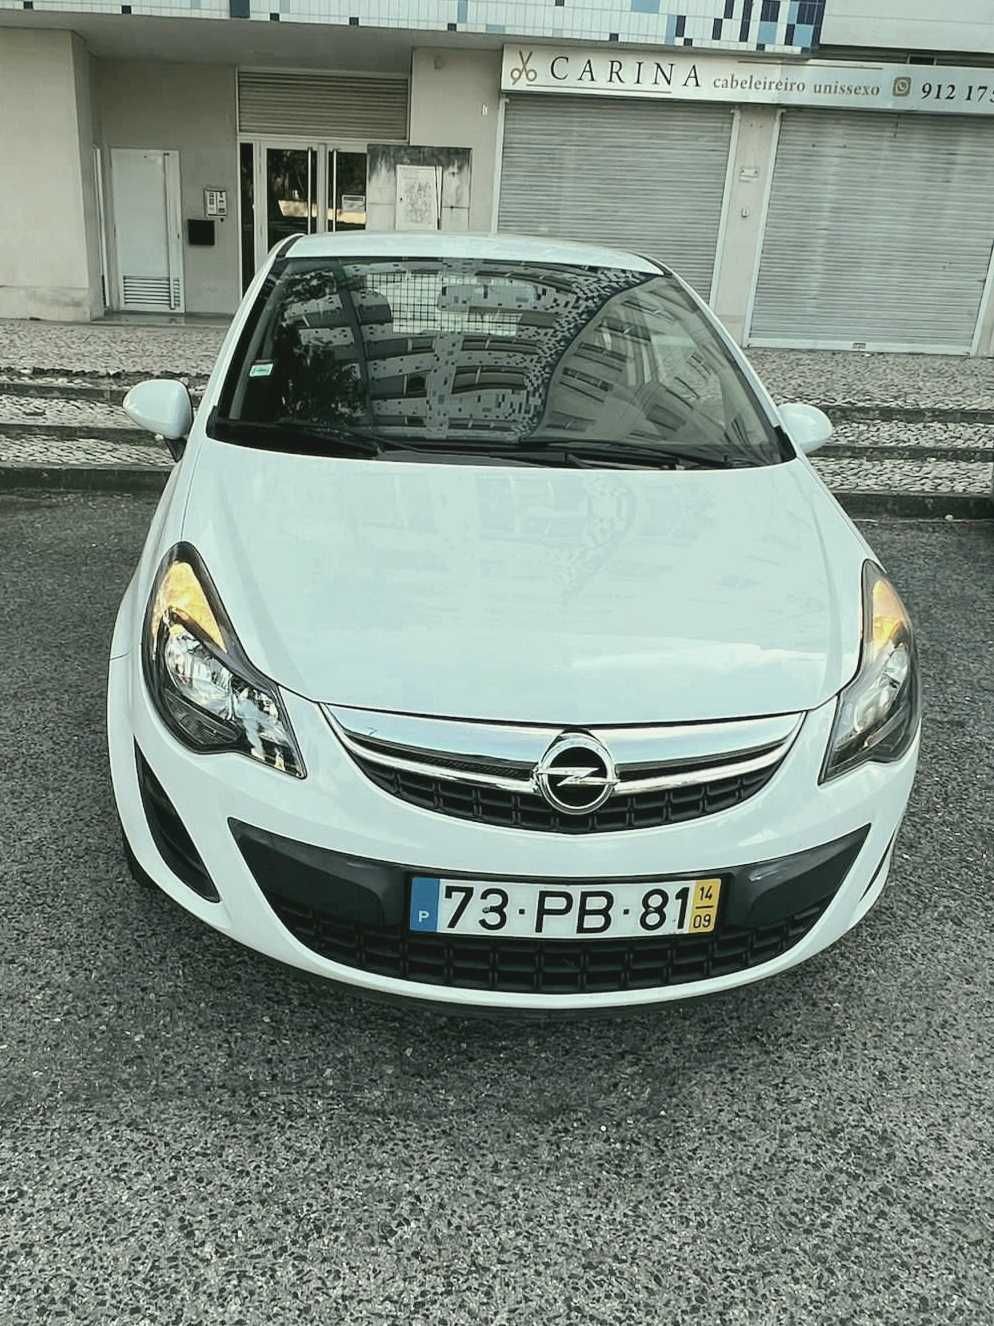 Opel Corsa 1.3 cdti van 2014- Impecavel